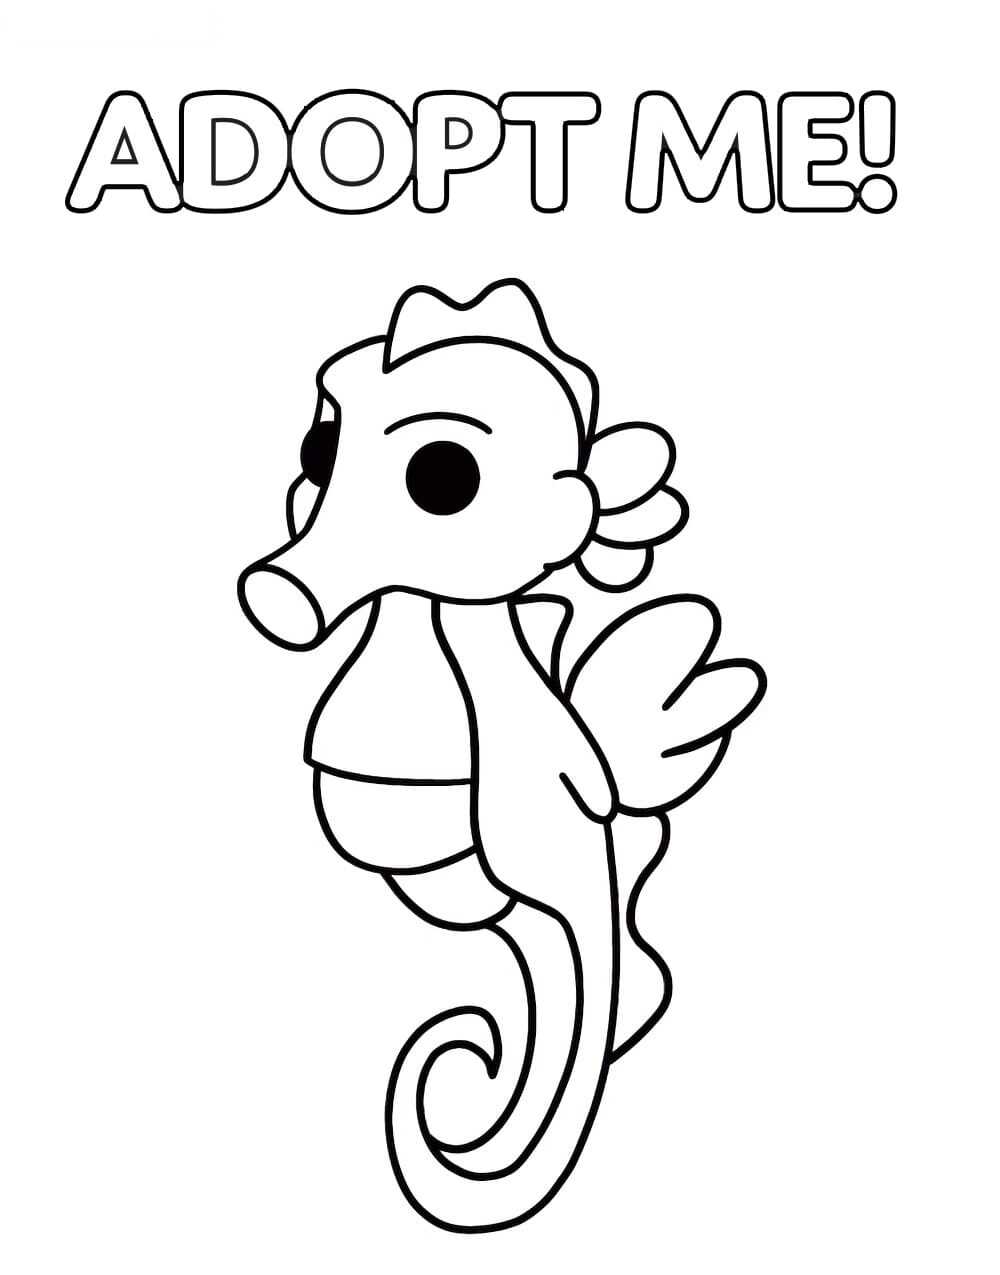 El caballito de mar de Adopt me tiene el hocico alargado y su cola se curva hacia su cuerpo de Adopt me